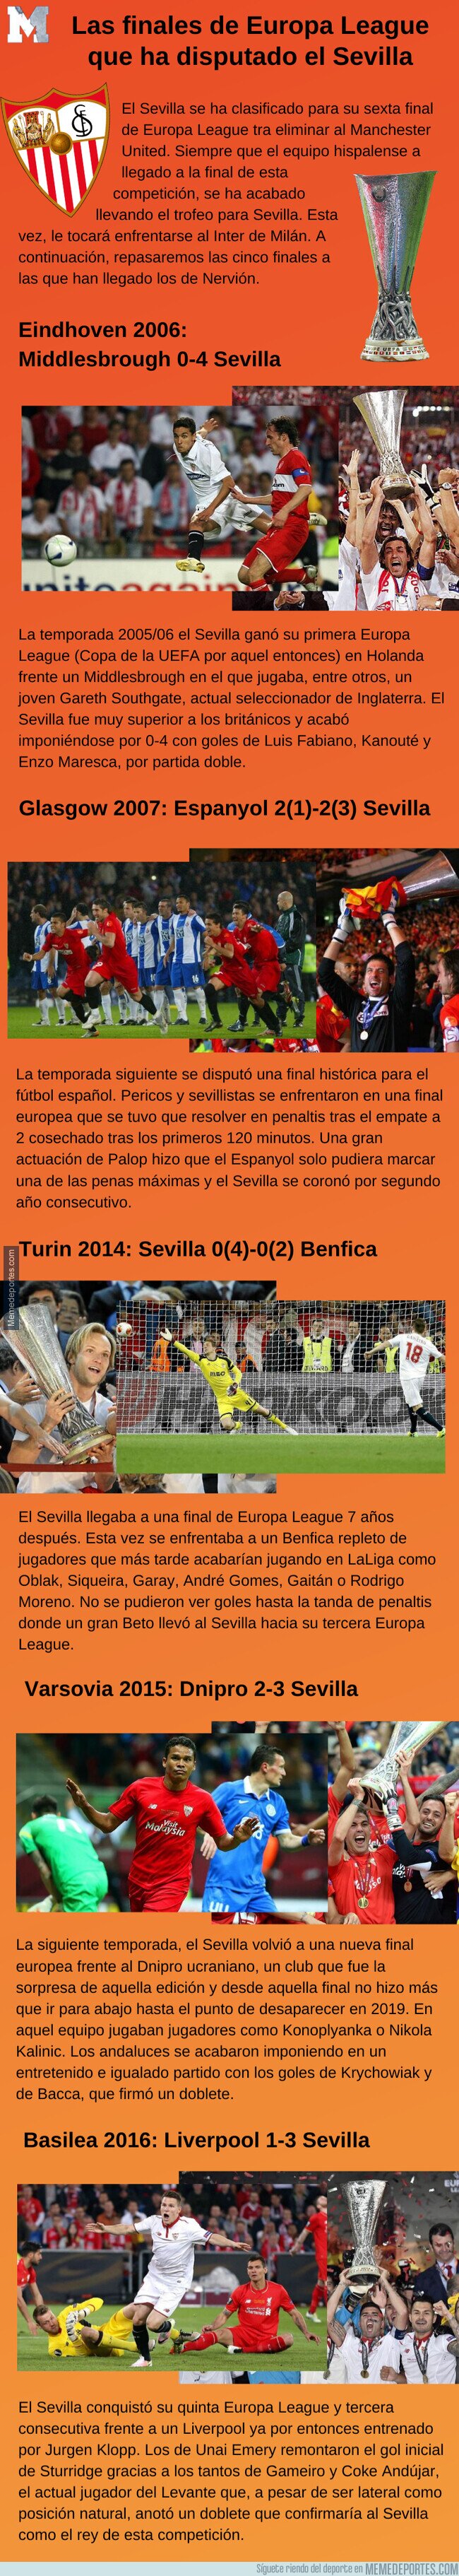 1113291 - Las finales de Europa League que ha disputado el Sevilla